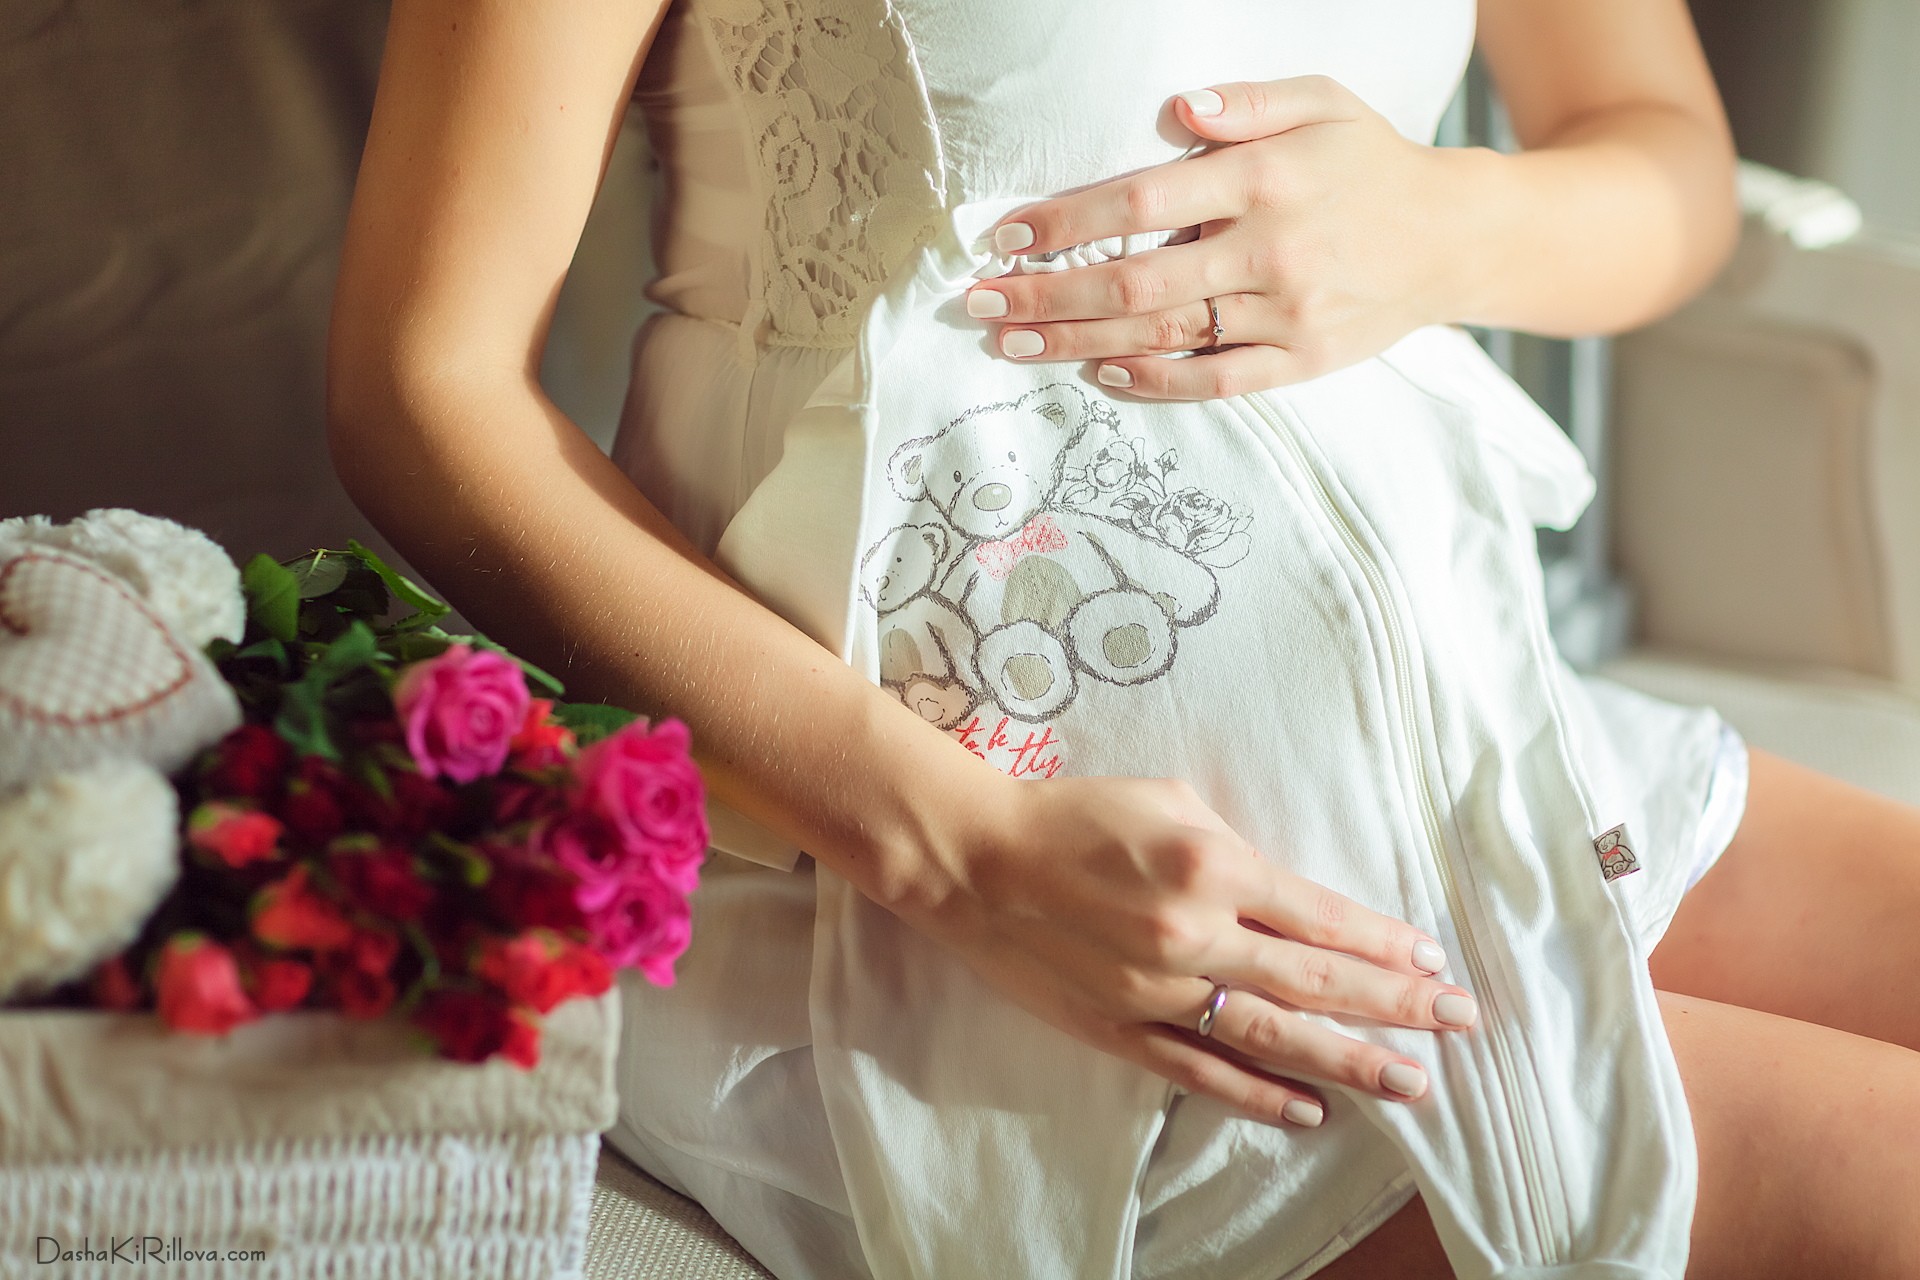 Прически для беременных в домашних условиях